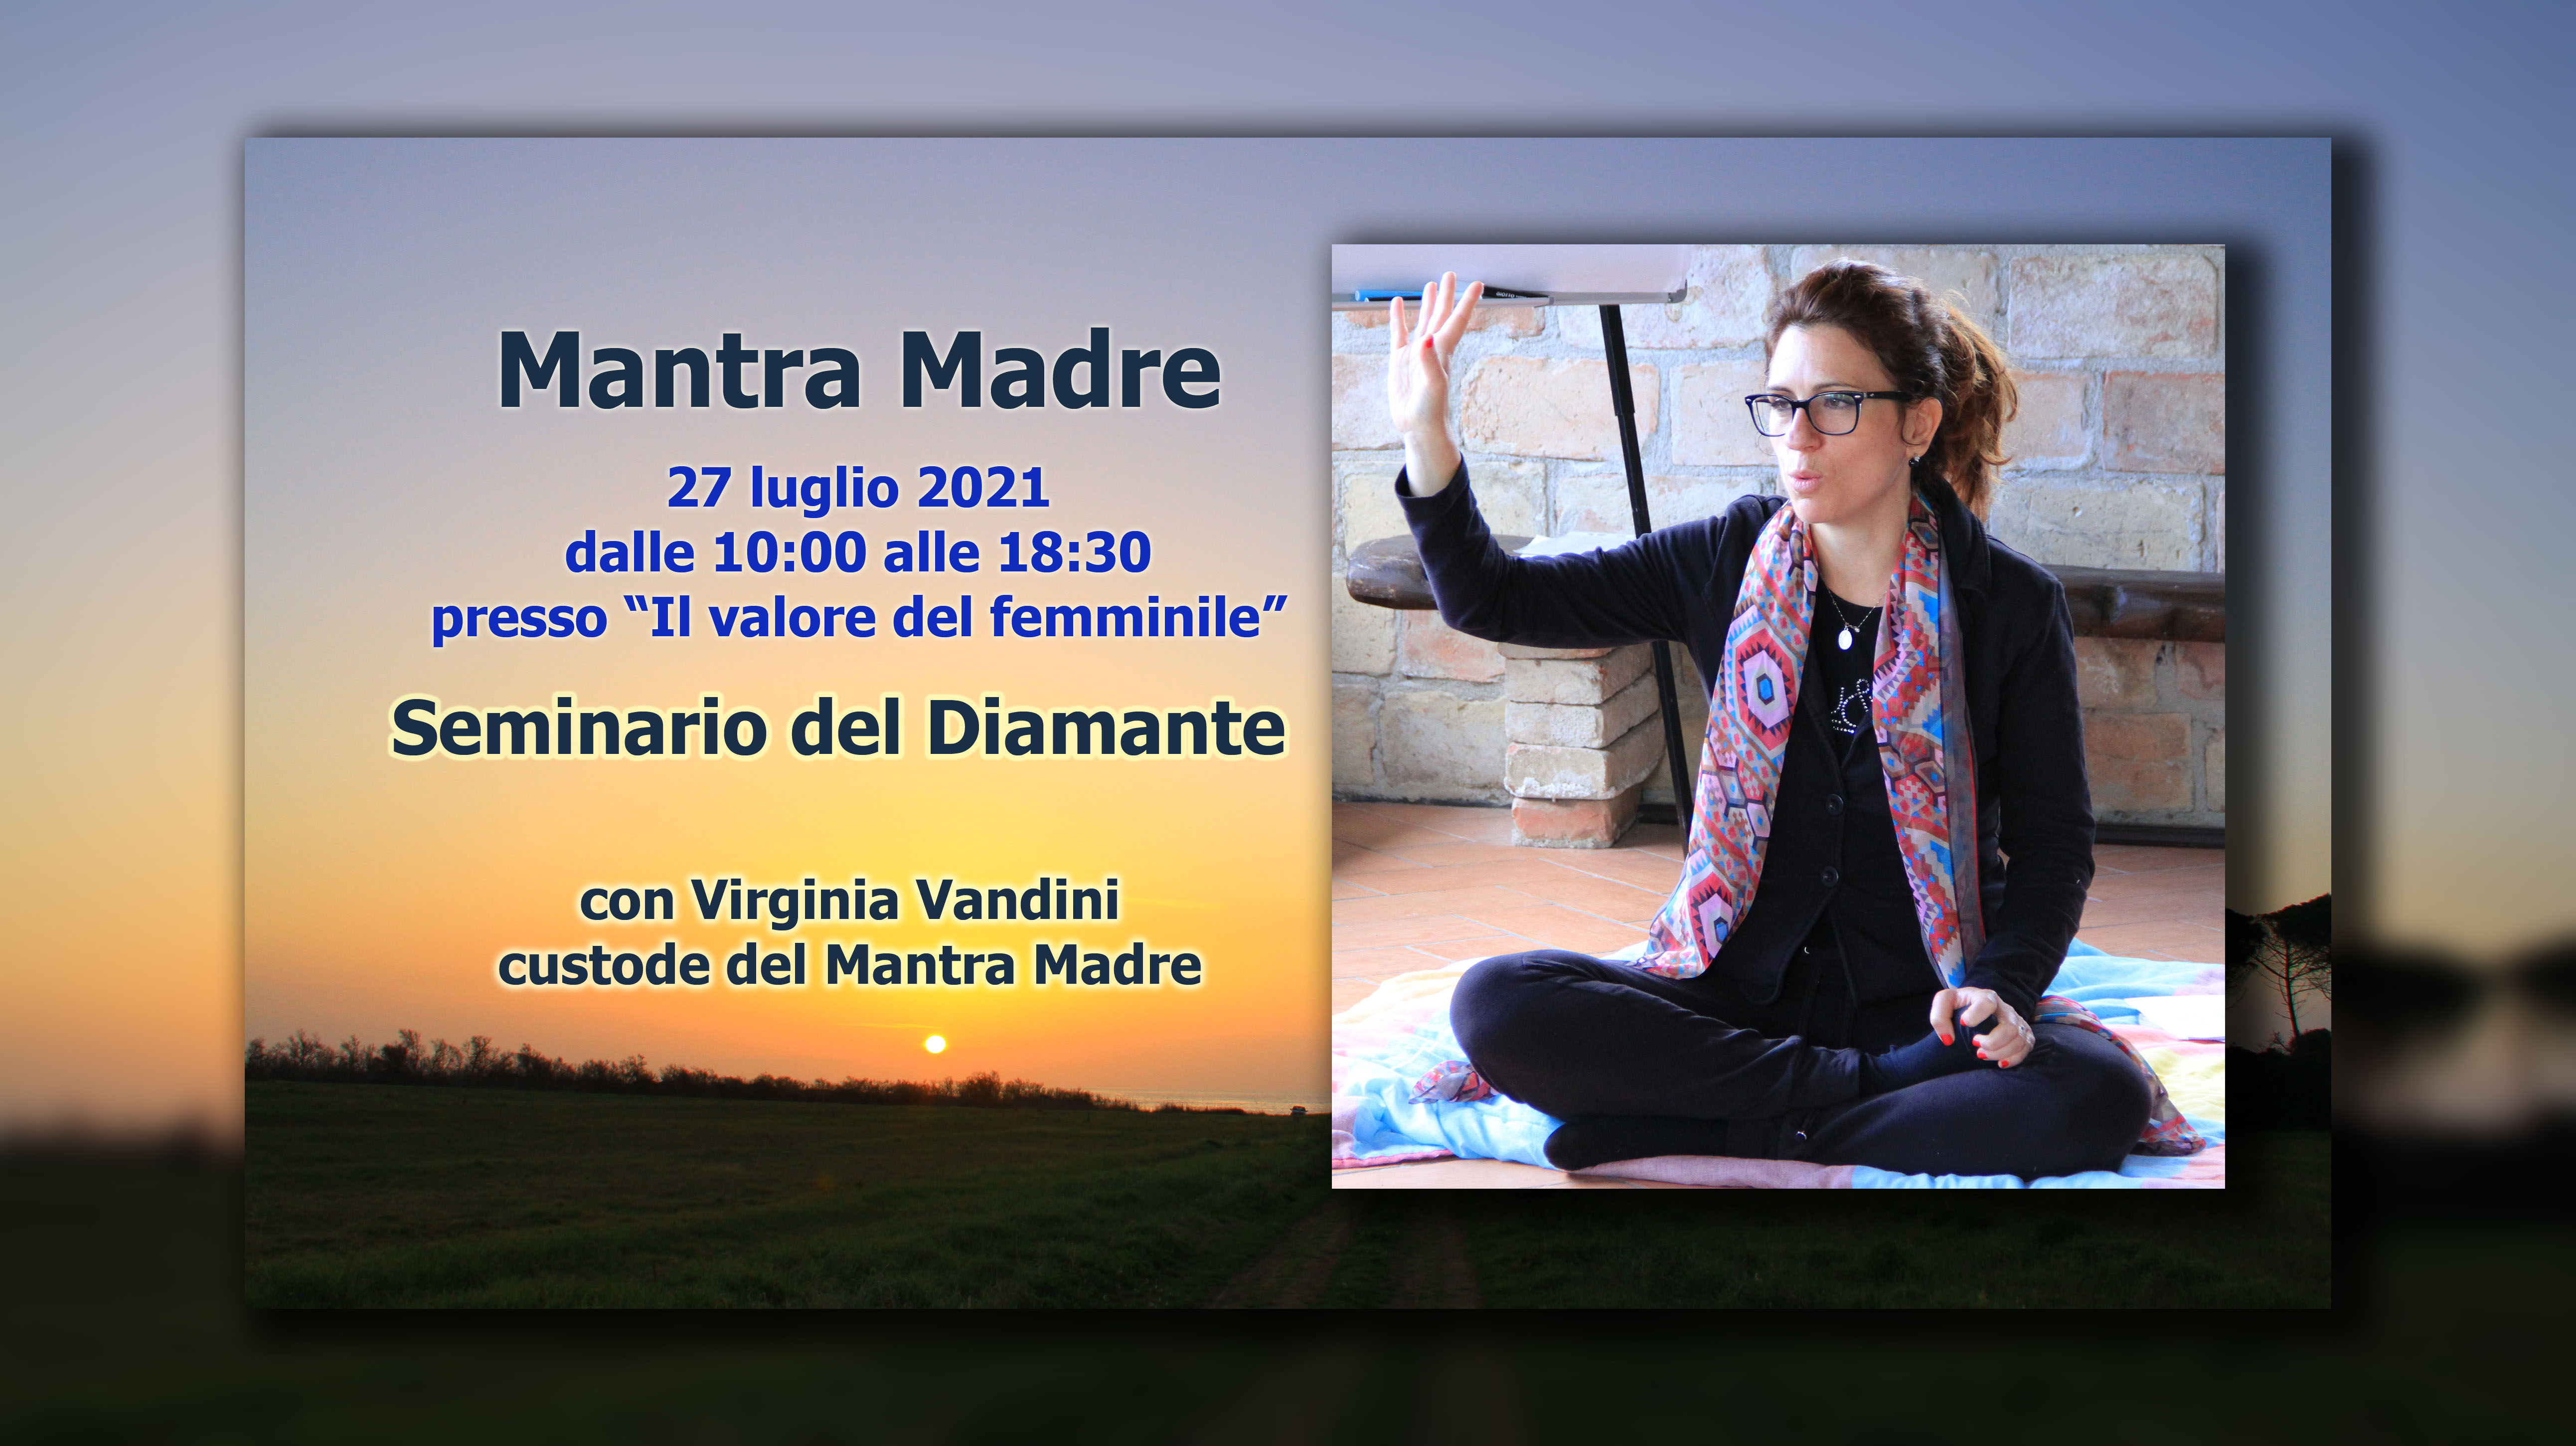 Mantra Madre seminario del diamante con Virginia Vandini